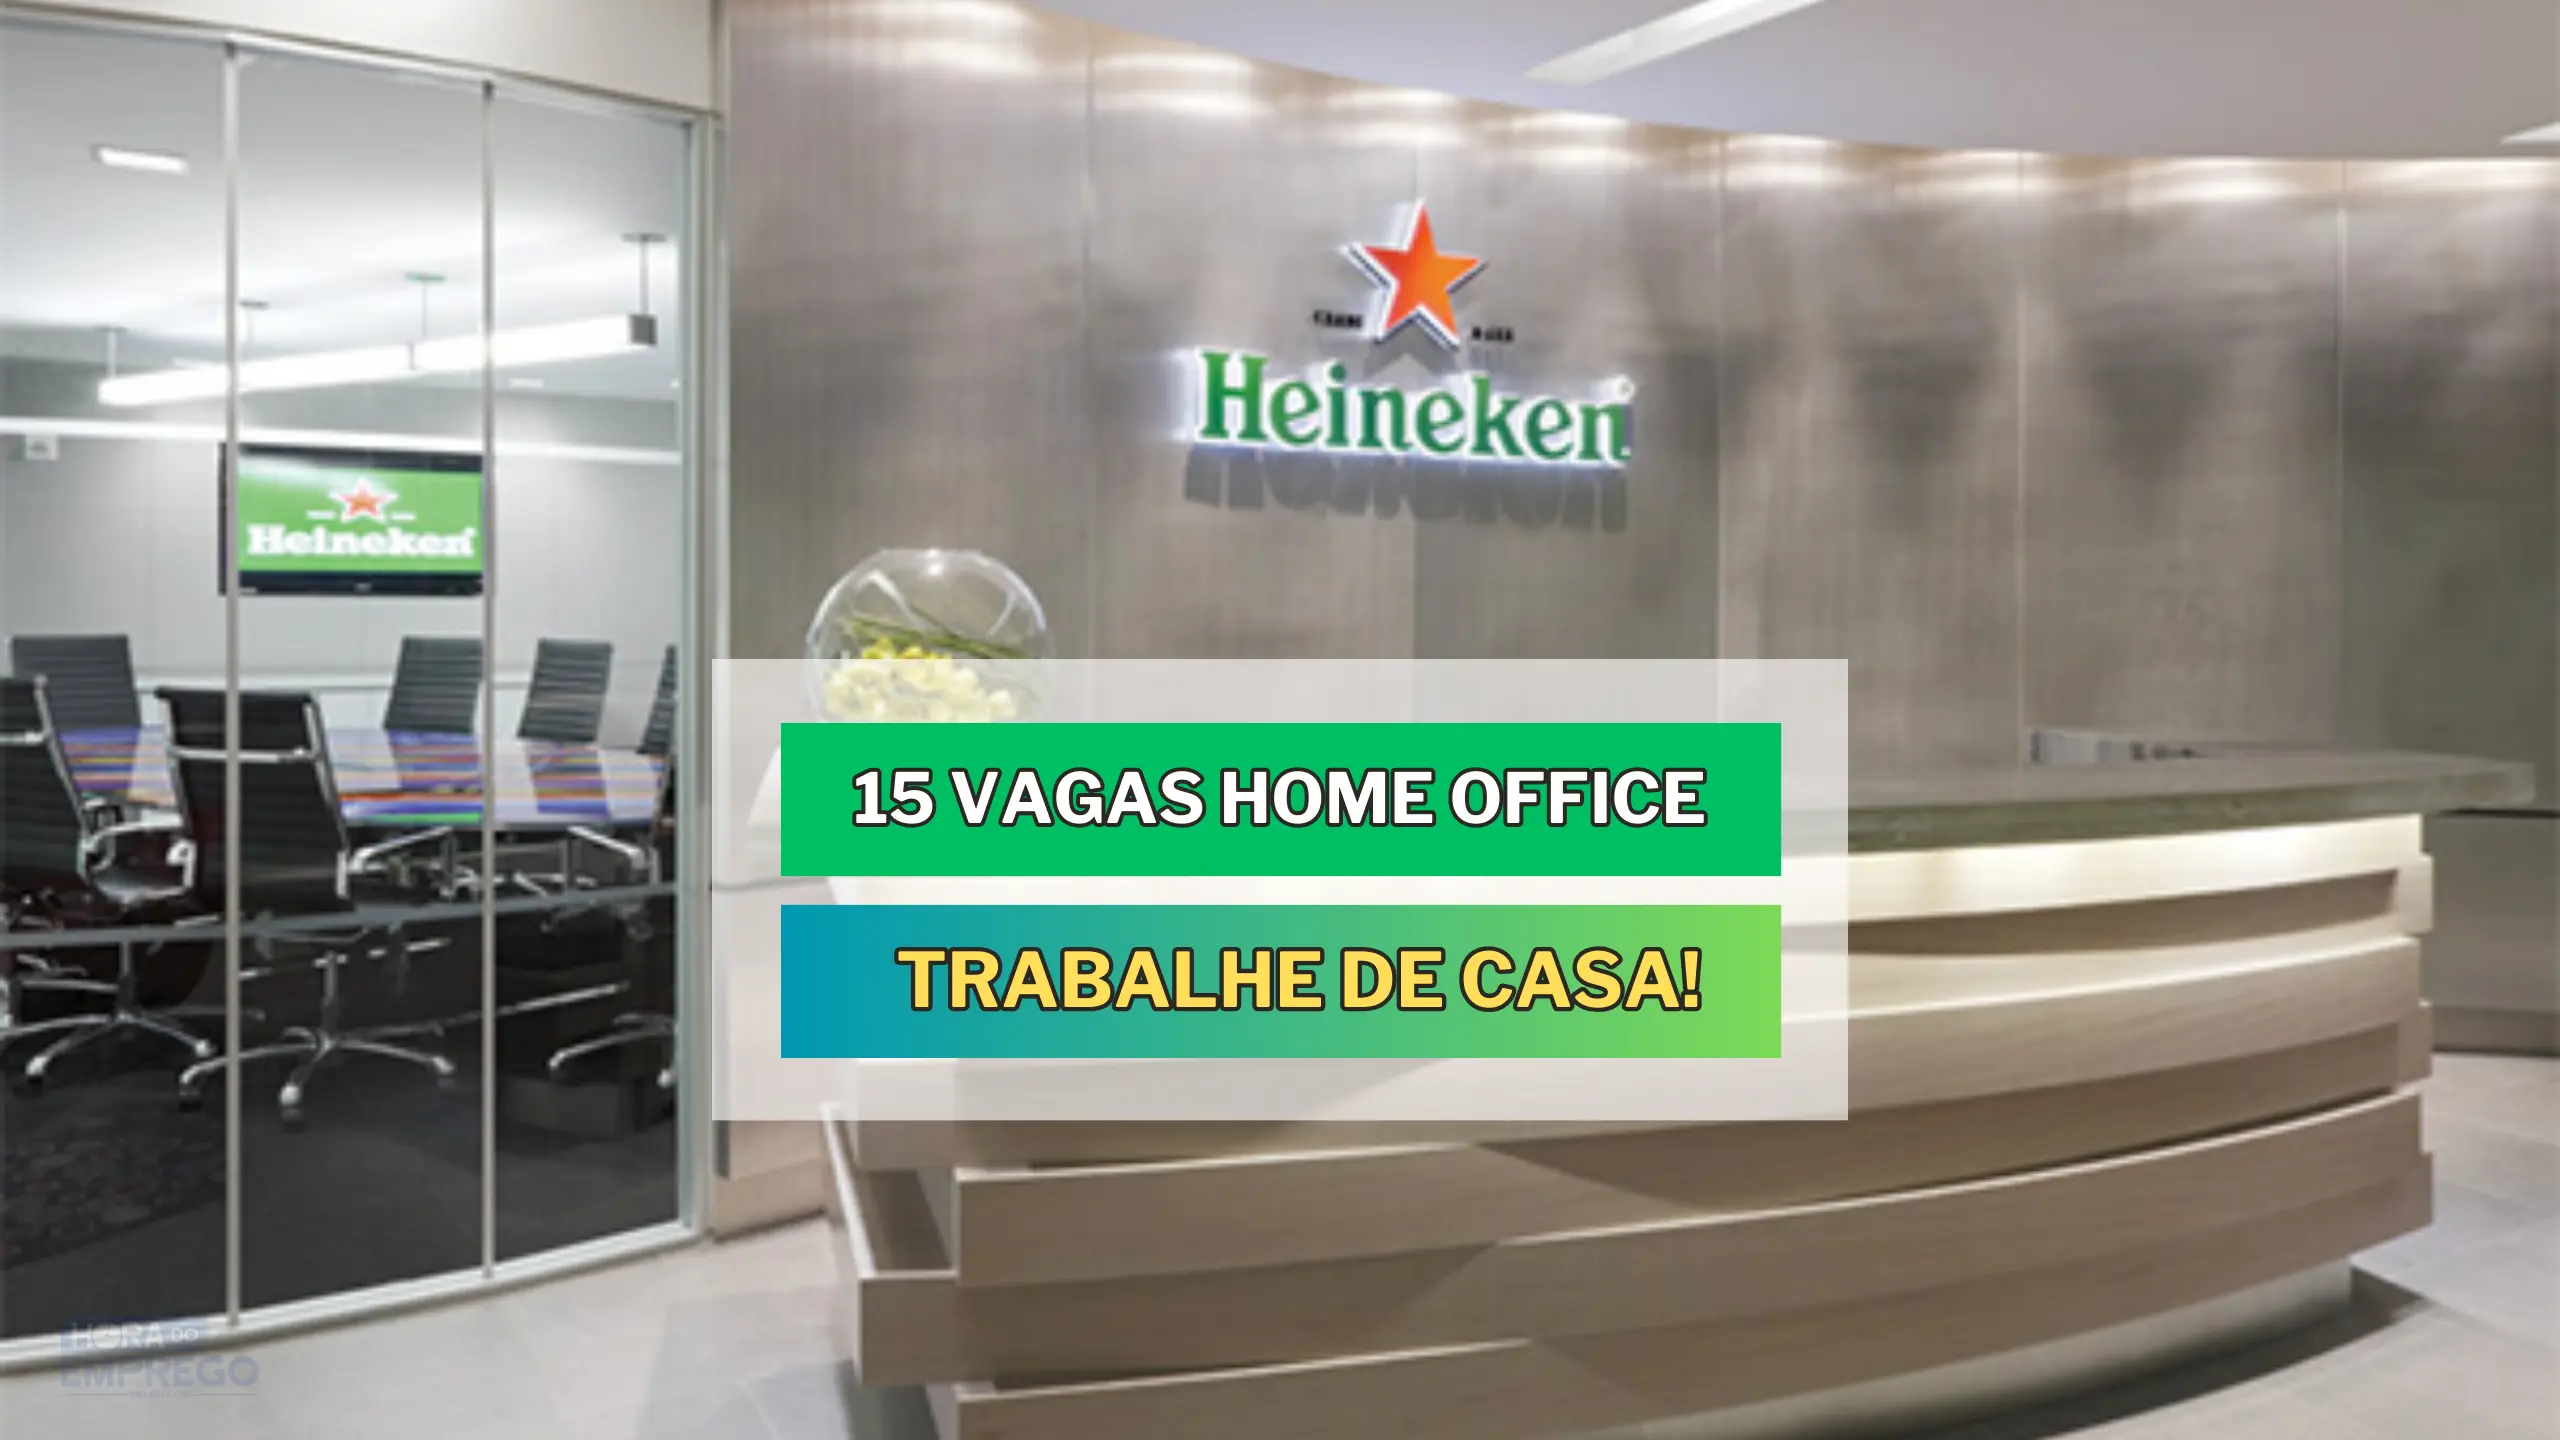 HEINEKEN abre 15 vagas 100% HOME OFFICE para TRABALHAR DE CASA no setor de Gestão de Processos